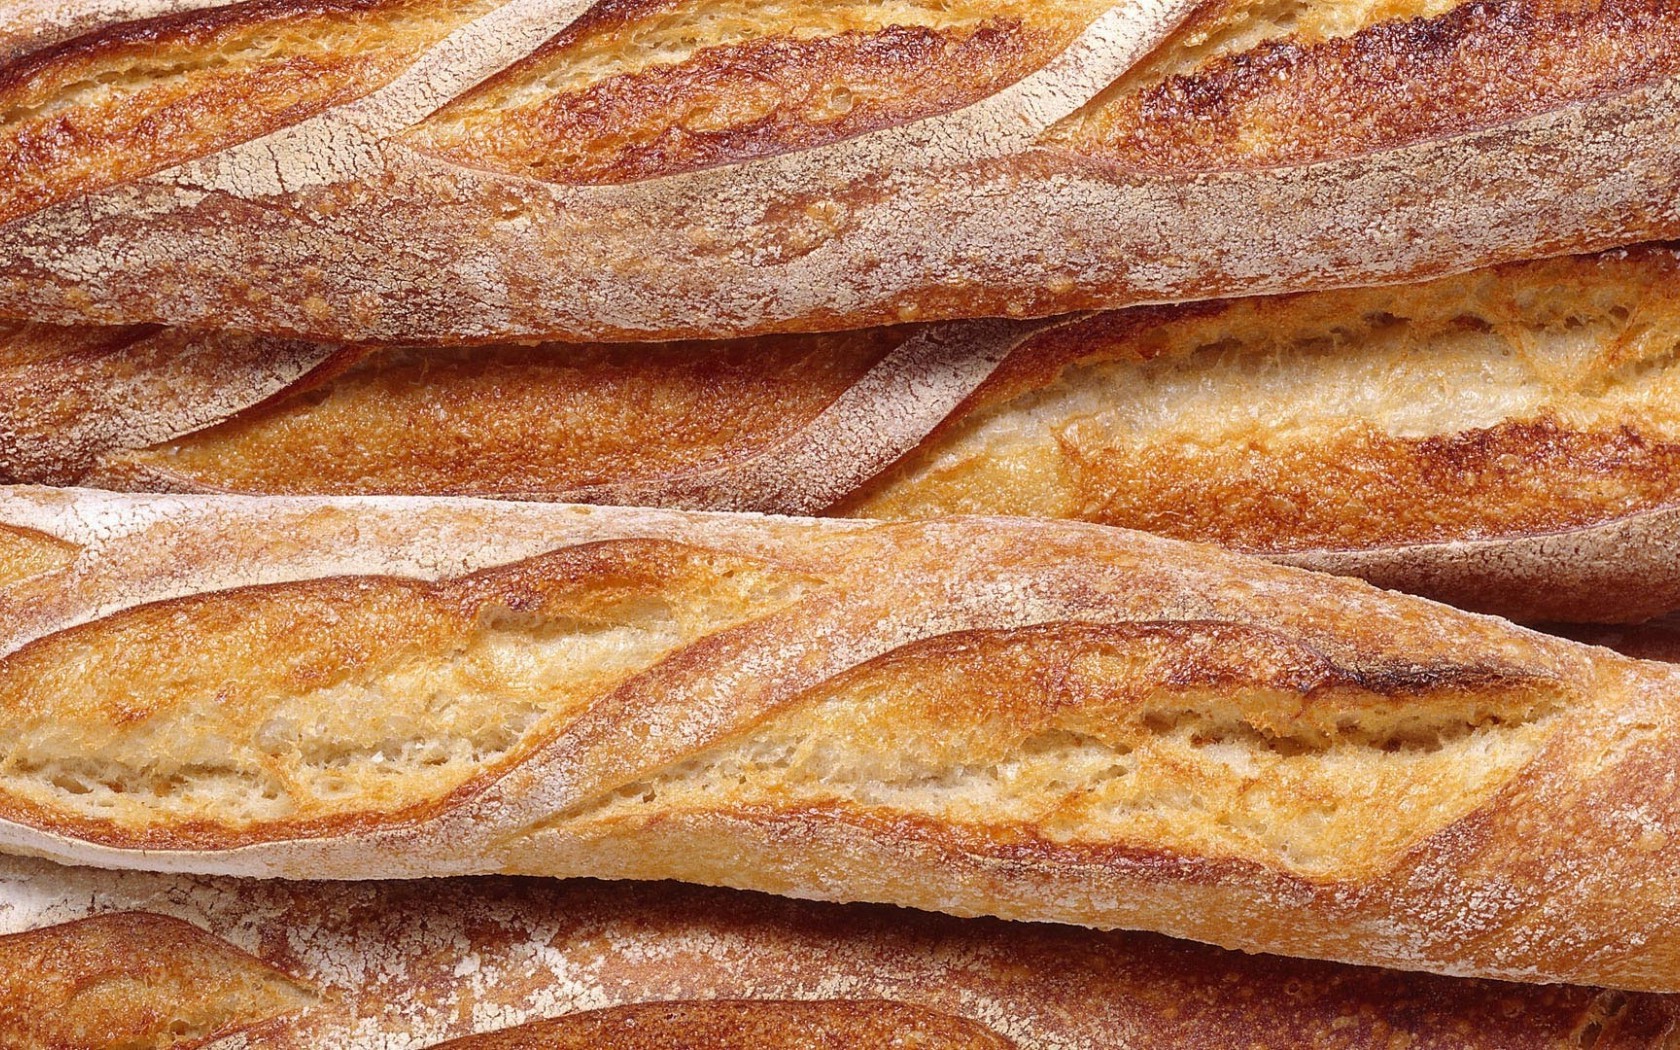 французская булка, еда, хлеб HD фото картинки, обои рабочий стол